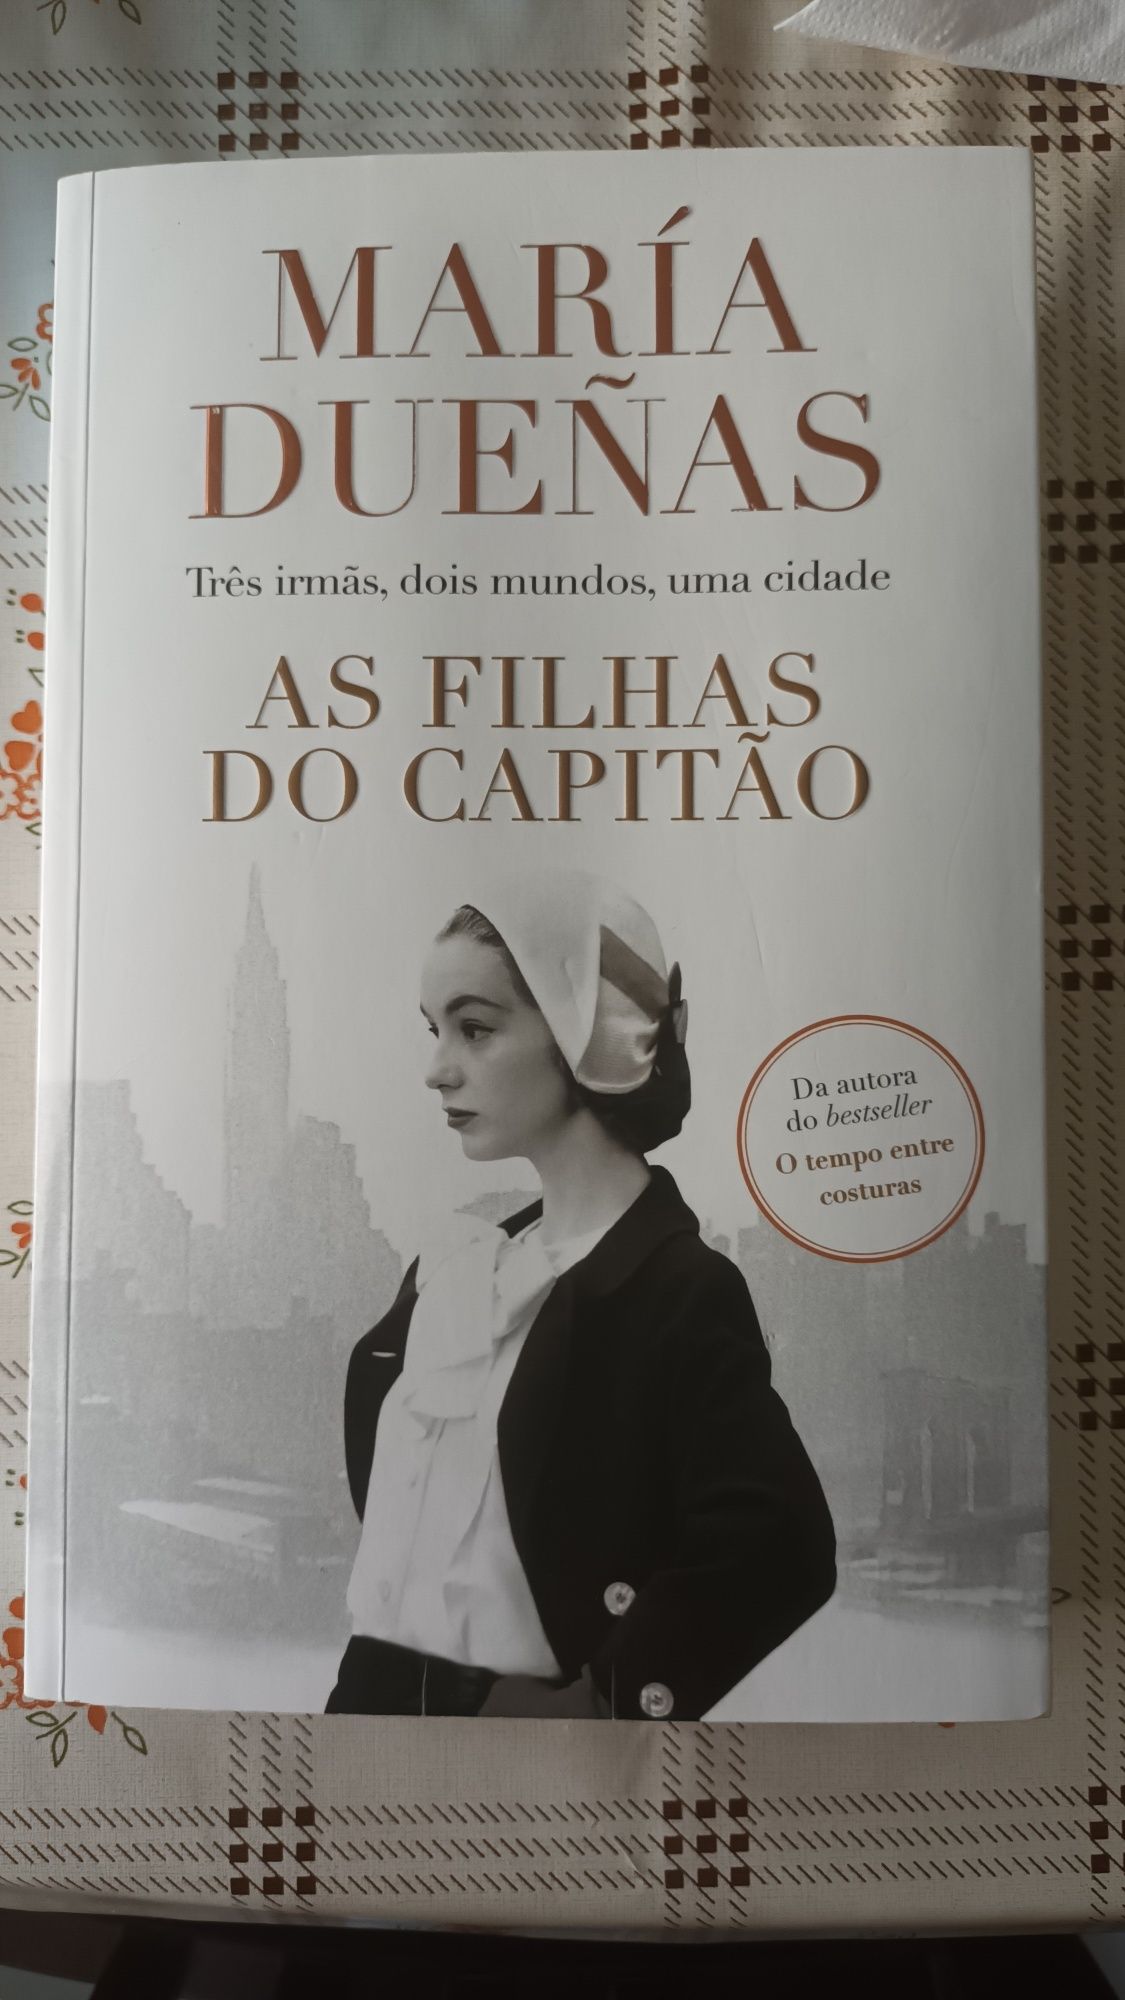 As filhas do capitão - María Duenãs